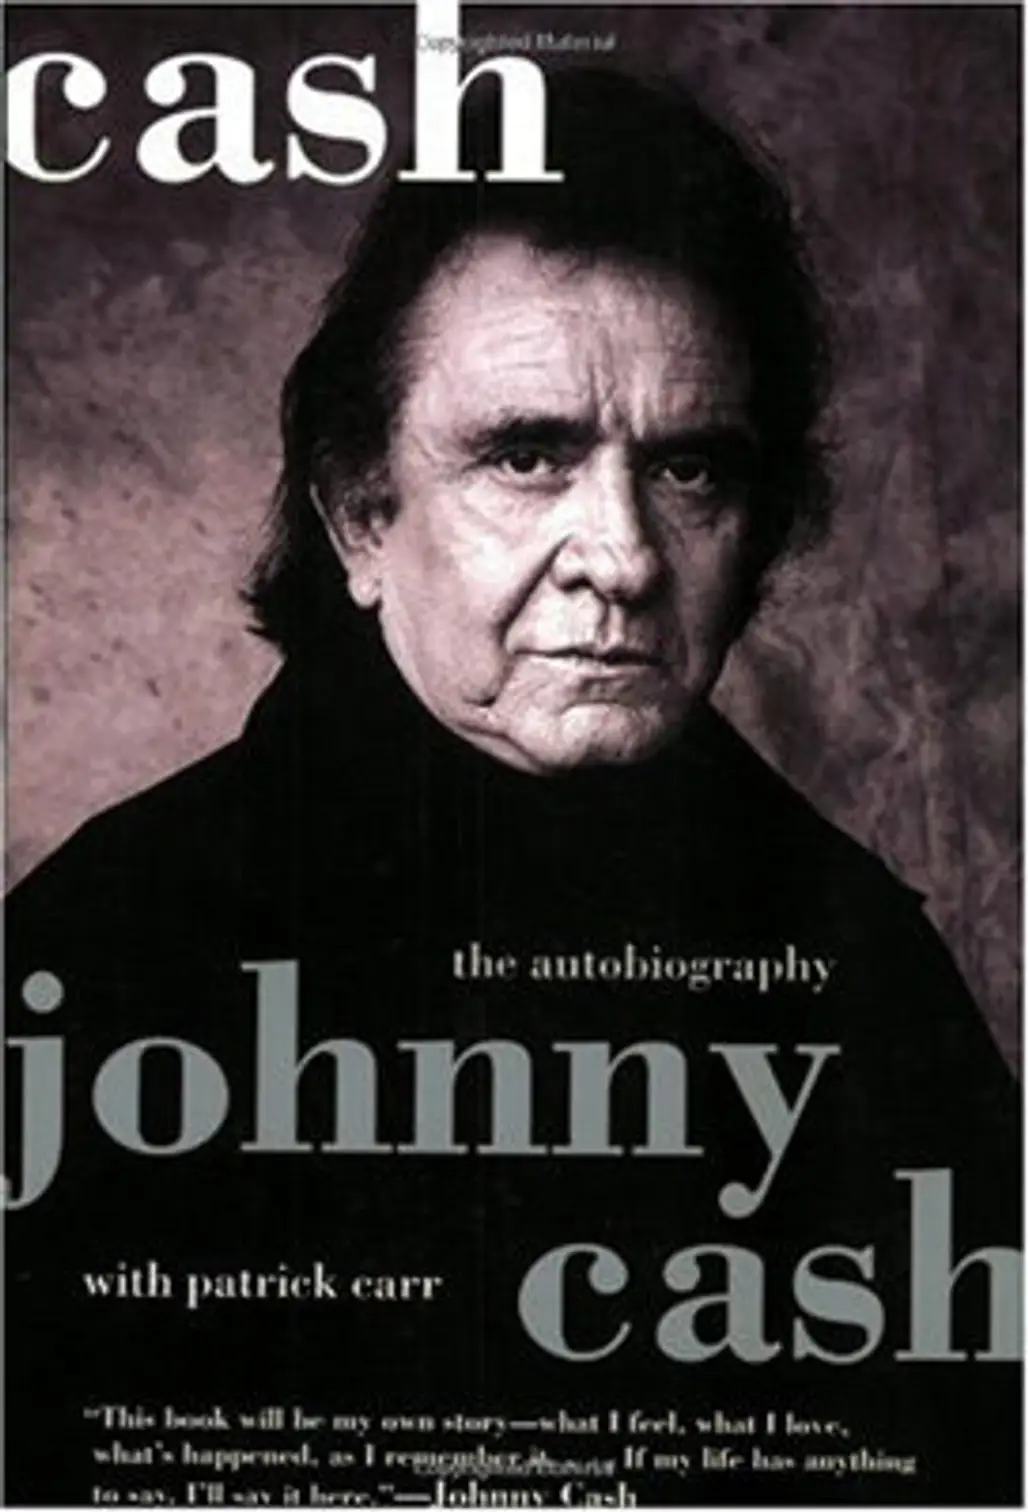 Johnny Cash: ‘Cash the Autobiography’